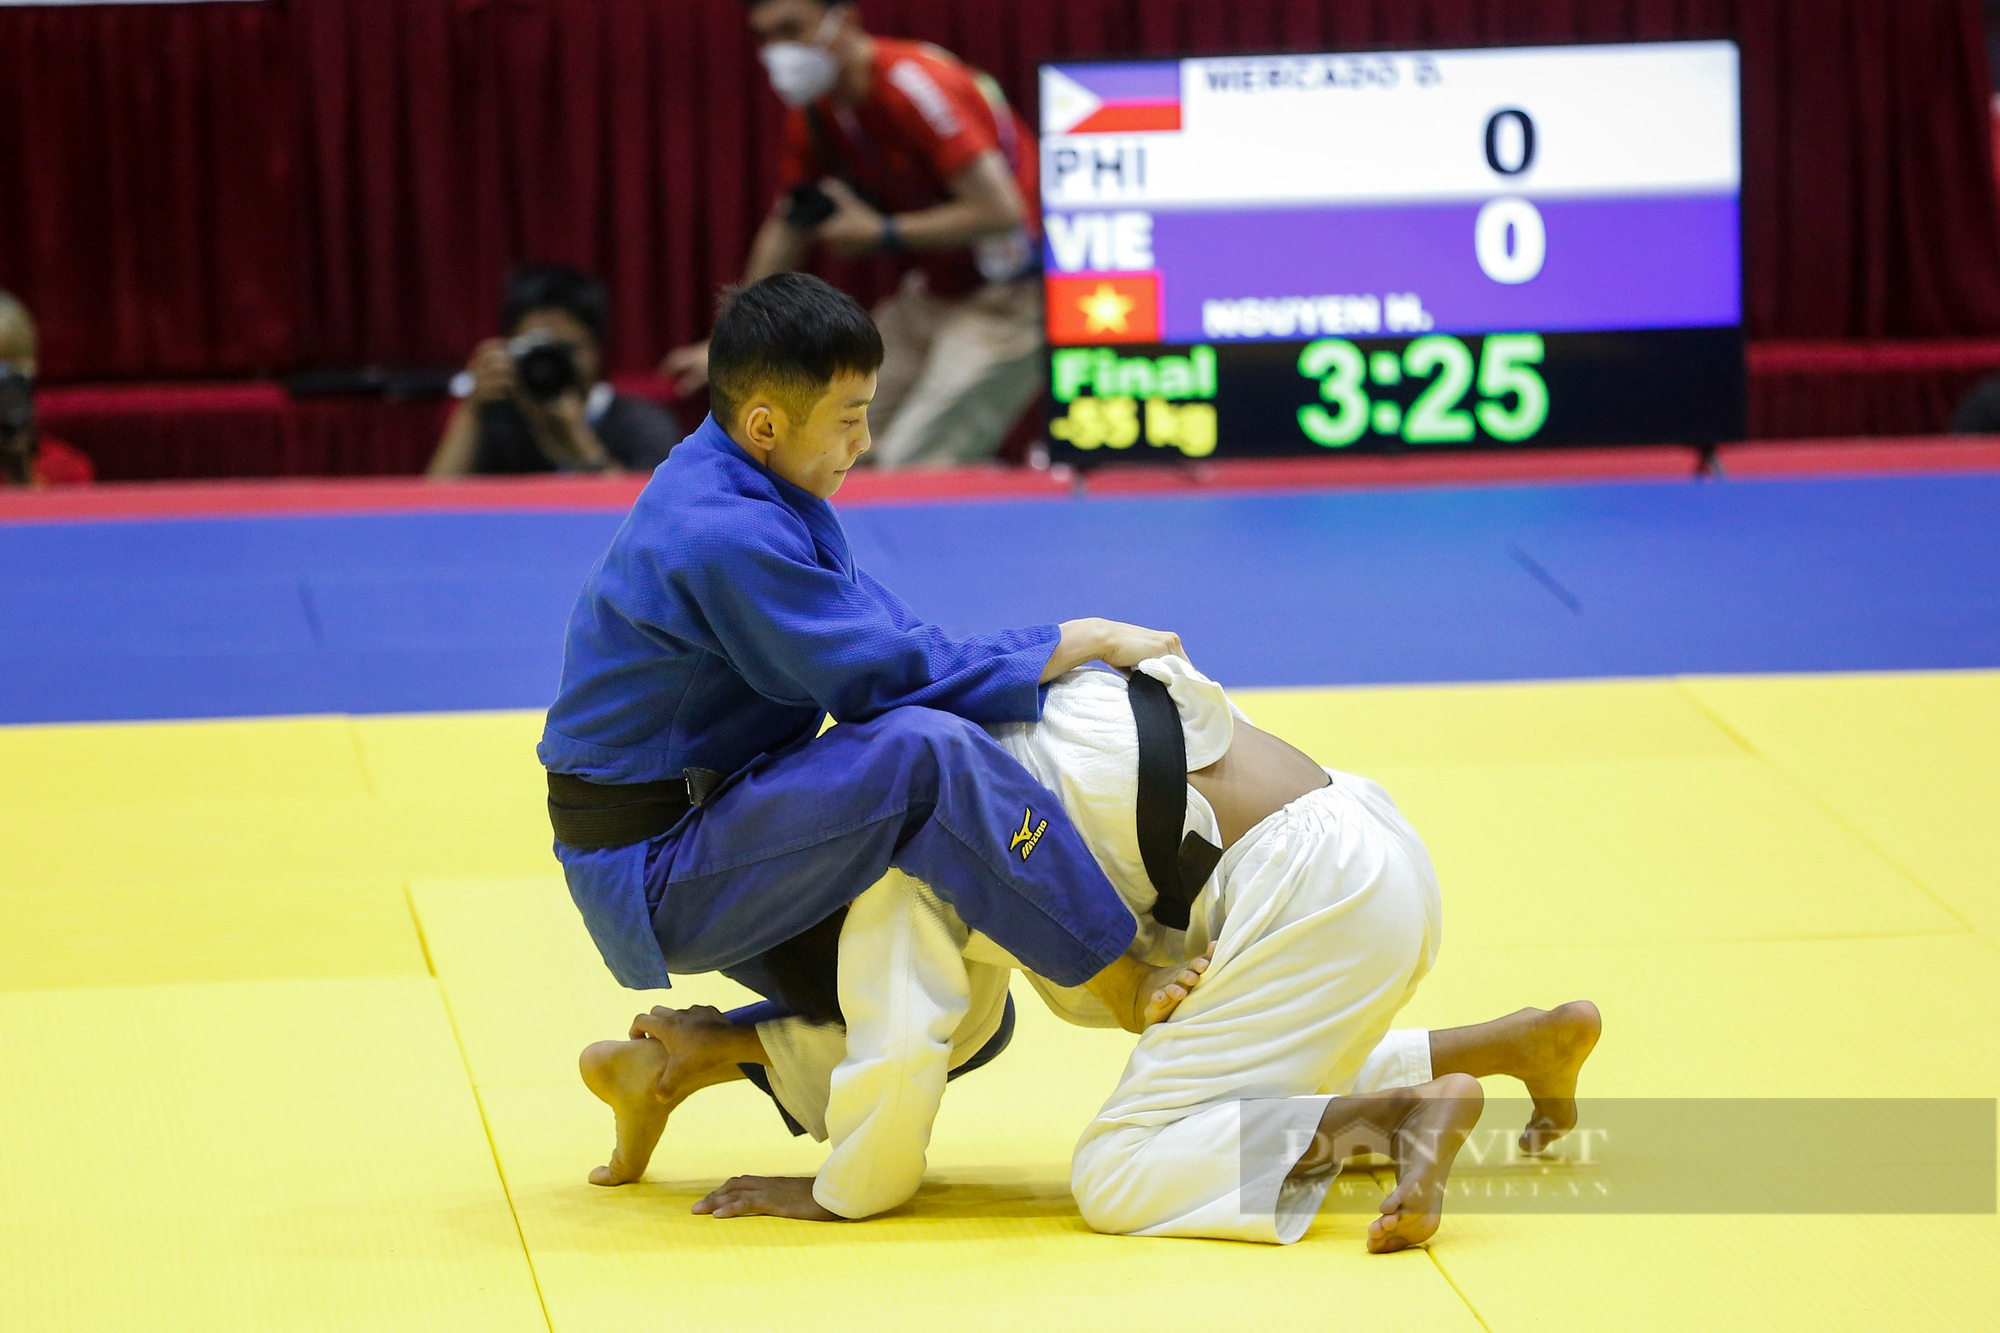 Võ sĩ Judo Việt Nam khóa chặt đối thủ và giành chiến thắng bằng luật bàn thắng vàng - Ảnh 3.